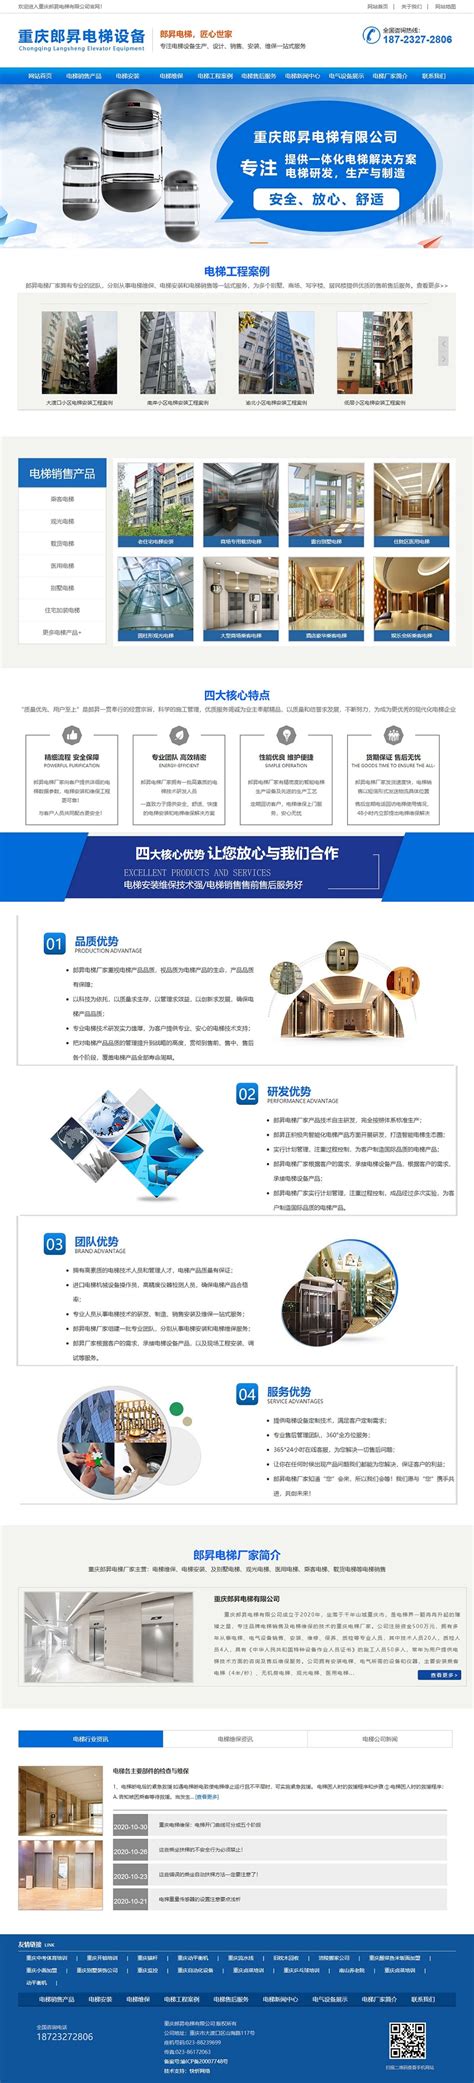 重庆企业网站建设解决方案-悦浩科技